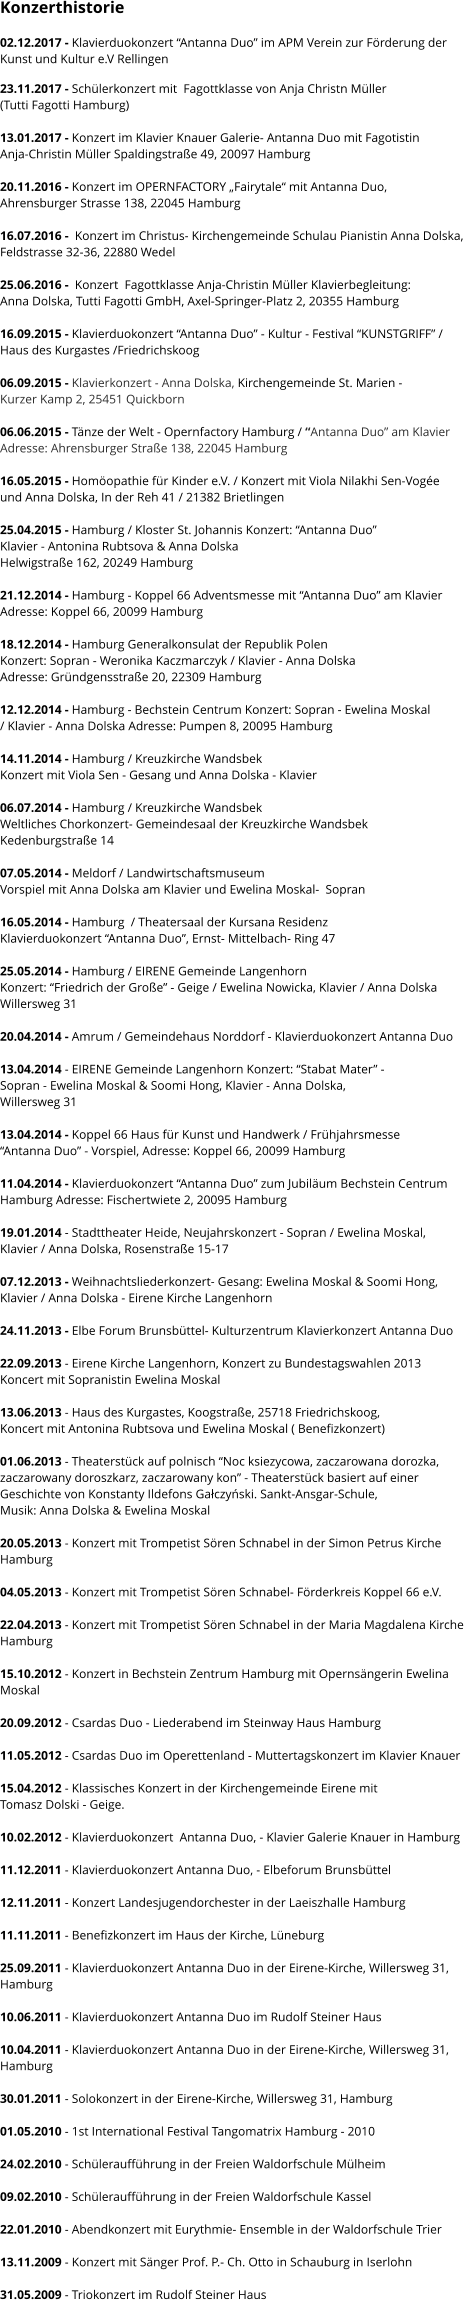 Konzerthistorie  02.12.2017 - Klavierduokonzert “Antanna Duo” im APM Verein zur Förderung der  Kunst und Kultur e.V Rellingen  23.11.2017 - Schülerkonzert mit  Fagottklasse von Anja Christn Müller  (Tutti Fagotti Hamburg)  13.01.2017 - Konzert im Klavier Knauer Galerie- Antanna Duo mit Fagotistin  Anja-Christin Müller Spaldingstraße 49, 20097 Hamburg  20.11.2016 - Konzert im OPERNFACTORY „Fairytale“ mit Antanna Duo,  Ahrensburger Strasse 138, 22045 Hamburg   16.07.2016 -  Konzert im Christus- Kirchengemeinde Schulau Pianistin Anna Dolska, Feldstrasse 32-36, 22880 Wedel   25.06.2016 -  Konzert  Fagottklasse Anja-Christin Müller Klavierbegleitung:  Anna Dolska, Tutti Fagotti GmbH, Axel-Springer-Platz 2, 20355 Hamburg  16.09.2015 - Klavierduokonzert “Antanna Duo” - Kultur - Festival “KUNSTGRIFF” /  Haus des Kurgastes /Friedrichskoog   06.09.2015 - Klavierkonzert - Anna Dolska, Kirchengemeinde St. Marien -  Kurzer Kamp 2, 25451 Quickborn  06.06.2015 - Tänze der Welt - Opernfactory Hamburg / “Antanna Duo” am Klavier Adresse: Ahrensburger Straße 138, 22045 Hamburg  16.05.2015 - Homöopathie für Kinder e.V. / Konzert mit Viola Nilakhi Sen-Vogée  und Anna Dolska, In der Reh 41 / 21382 Brietlingen  25.04.2015 - Hamburg / Kloster St. Johannis Konzert: “Antanna Duo”  Klavier - Antonina Rubtsova & Anna Dolska  Helwigstraße 162, 20249 Hamburg  21.12.2014 - Hamburg - Koppel 66 Adventsmesse mit “Antanna Duo” am Klavier  Adresse: Koppel 66, 20099 Hamburg   18.12.2014 - Hamburg Generalkonsulat der Republik Polen  Konzert: Sopran - Weronika Kaczmarczyk / Klavier - Anna Dolska  Adresse: Gründgensstraße 20, 22309 Hamburg   12.12.2014 - Hamburg - Bechstein Centrum Konzert: Sopran - Ewelina Moskal  / Klavier - Anna Dolska Adresse: Pumpen 8, 20095 Hamburg  14.11.2014 - Hamburg / Kreuzkirche Wandsbek Konzert mit Viola Sen - Gesang und Anna Dolska - Klavier  06.07.2014 - Hamburg / Kreuzkirche Wandsbek Weltliches Chorkonzert- Gemeindesaal der Kreuzkirche Wandsbek Kedenburgstraße 14  07.05.2014 - Meldorf / Landwirtschaftsmuseum Vorspiel mit Anna Dolska am Klavier und Ewelina Moskal-  Sopran  16.05.2014 - Hamburg  / Theatersaal der Kursana Residenz  Klavierduokonzert “Antanna Duo”, Ernst- Mittelbach- Ring 47  25.05.2014 - Hamburg / EIRENE Gemeinde Langenhorn  Konzert: “Friedrich der Große” - Geige / Ewelina Nowicka, Klavier / Anna Dolska Willersweg 31   20.04.2014 - Amrum / Gemeindehaus Norddorf - Klavierduokonzert Antanna Duo  13.04.2014 - EIRENE Gemeinde Langenhorn Konzert: “Stabat Mater” - Sopran - Ewelina Moskal & Soomi Hong, Klavier - Anna Dolska,  Willersweg 31  13.04.2014 - Koppel 66 Haus für Kunst und Handwerk / Frühjahrsmesse “Antanna Duo” - Vorspiel, Adresse: Koppel 66, 20099 Hamburg  11.04.2014 - Klavierduokonzert “Antanna Duo” zum Jubiläum Bechstein Centrum  Hamburg Adresse: Fischertwiete 2, 20095 Hamburg  19.01.2014 - Stadttheater Heide, Neujahrskonzert - Sopran / Ewelina Moskal,  Klavier / Anna Dolska, Rosenstraße 15-17  07.12.2013 - Weihnachtsliederkonzert- Gesang: Ewelina Moskal & Soomi Hong,  Klavier / Anna Dolska - Eirene Kirche Langenhorn  24.11.2013 - Elbe Forum Brunsbüttel- Kulturzentrum Klavierkonzert Antanna Duo  22.09.2013 - Eirene Kirche Langenhorn, Konzert zu Bundestagswahlen 2013 Koncert mit Sopranistin Ewelina Moskal  13.06.2013 - Haus des Kurgastes, Koogstraße, 25718 Friedrichskoog, Koncert mit Antonina Rubtsova und Ewelina Moskal ( Benefizkonzert)  01.06.2013 - Theaterstück auf polnisch “Noc ksiezycowa, zaczarowana dorozka,  zaczarowany doroszkarz, zaczarowany kon” - Theaterstück basiert auf einer Geschichte von Konstanty Ildefons Gałczyński. Sankt-Ansgar-Schule,  Musik: Anna Dolska & Ewelina Moskal  20.05.2013 - Konzert mit Trompetist Sören Schnabel in der Simon Petrus Kirche  Hamburg  04.05.2013 - Konzert mit Trompetist Sören Schnabel- Förderkreis Koppel 66 e.V.    22.04.2013 - Konzert mit Trompetist Sören Schnabel in der Maria Magdalena Kirche  Hamburg      15.10.2012 - Konzert in Bechstein Zentrum Hamburg mit Opernsängerin Ewelina  Moskal  20.09.2012 - Csardas Duo - Liederabend im Steinway Haus Hamburg  11.05.2012 - Csardas Duo im Operettenland - Muttertagskonzert im Klavier Knauer  15.04.2012 - Klassisches Konzert in der Kirchengemeinde Eirene mit  Tomasz Dolski - Geige.  10.02.2012 - Klavierduokonzert  Antanna Duo, - Klavier Galerie Knauer in Hamburg  11.12.2011 - Klavierduokonzert Antanna Duo, - Elbeforum Brunsbüttel  12.11.2011 - Konzert Landesjugendorchester in der Laeiszhalle Hamburg  11.11.2011 - Benefizkonzert im Haus der Kirche, Lüneburg  25.09.2011 - Klavierduokonzert Antanna Duo in der Eirene-Kirche, Willersweg 31,  Hamburg  10.06.2011 - Klavierduokonzert Antanna Duo im Rudolf Steiner Haus  10.04.2011 - Klavierduokonzert Antanna Duo in der Eirene-Kirche, Willersweg 31,  Hamburg  30.01.2011 - Solokonzert in der Eirene-Kirche, Willersweg 31, Hamburg  01.05.2010 - 1st International Festival Tangomatrix Hamburg - 2010  24.02.2010 - Schüleraufführung in der Freien Waldorfschule Mülheim  09.02.2010 - Schüleraufführung in der Freien Waldorfschule Kassel  22.01.2010 - Abendkonzert mit Eurythmie- Ensemble in der Waldorfschule Trier  13.11.2009 - Konzert mit Sänger Prof. P.- Ch. Otto in Schauburg in Iserlohn  31.05.2009 - Triokonzert im Rudolf Steiner Haus